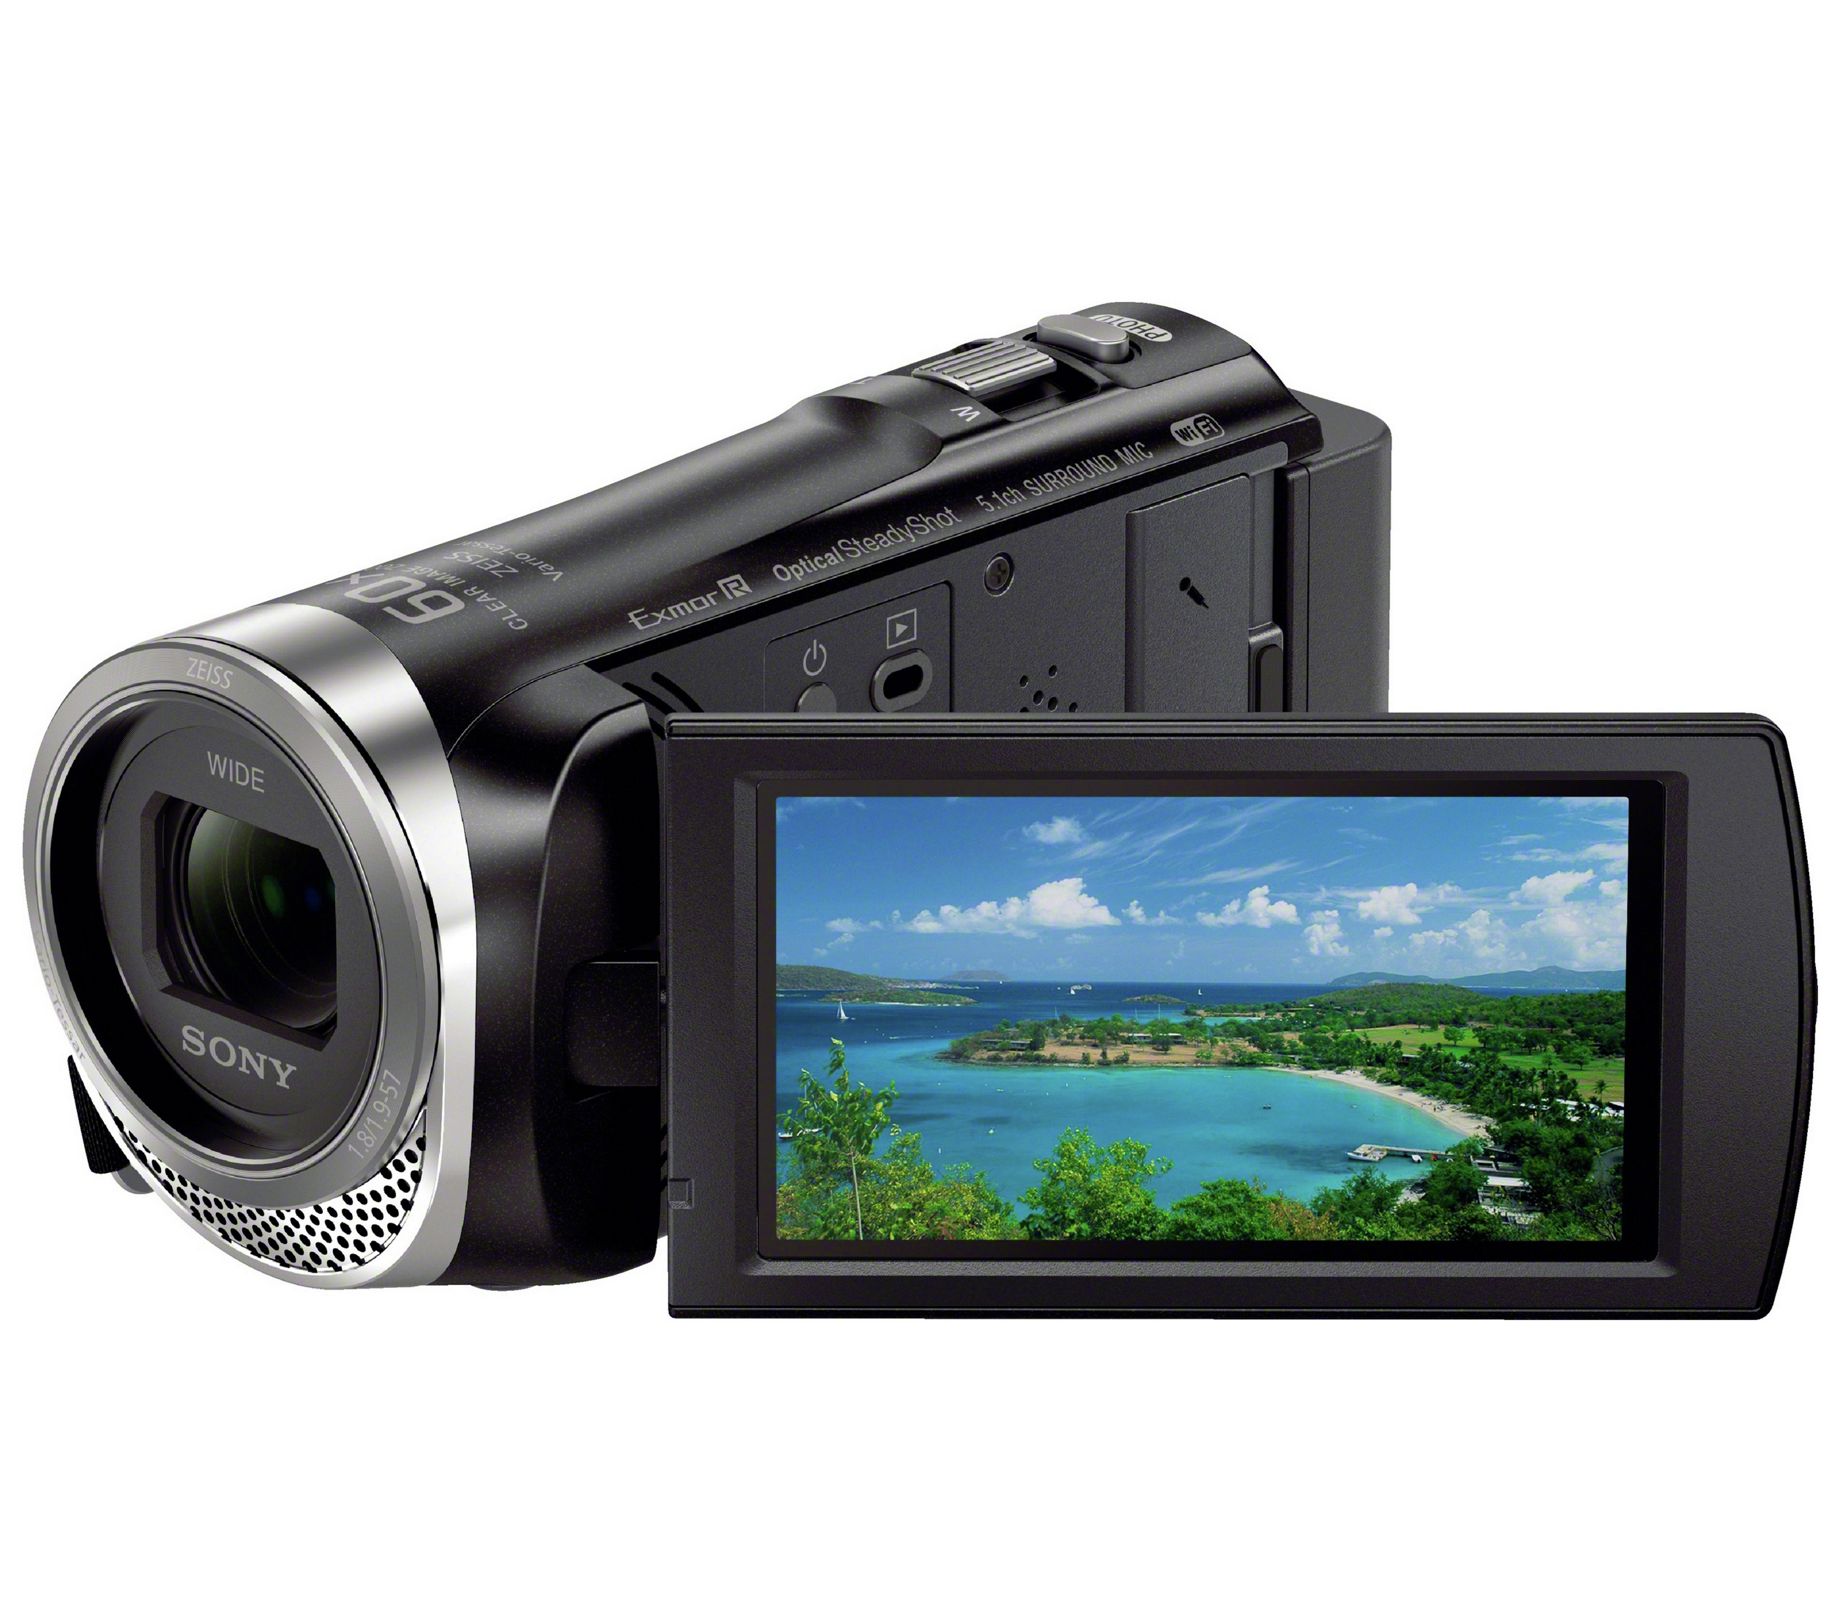 Amazon.com : Night Vision Digital Camcorder : Mini Dv Digital ...